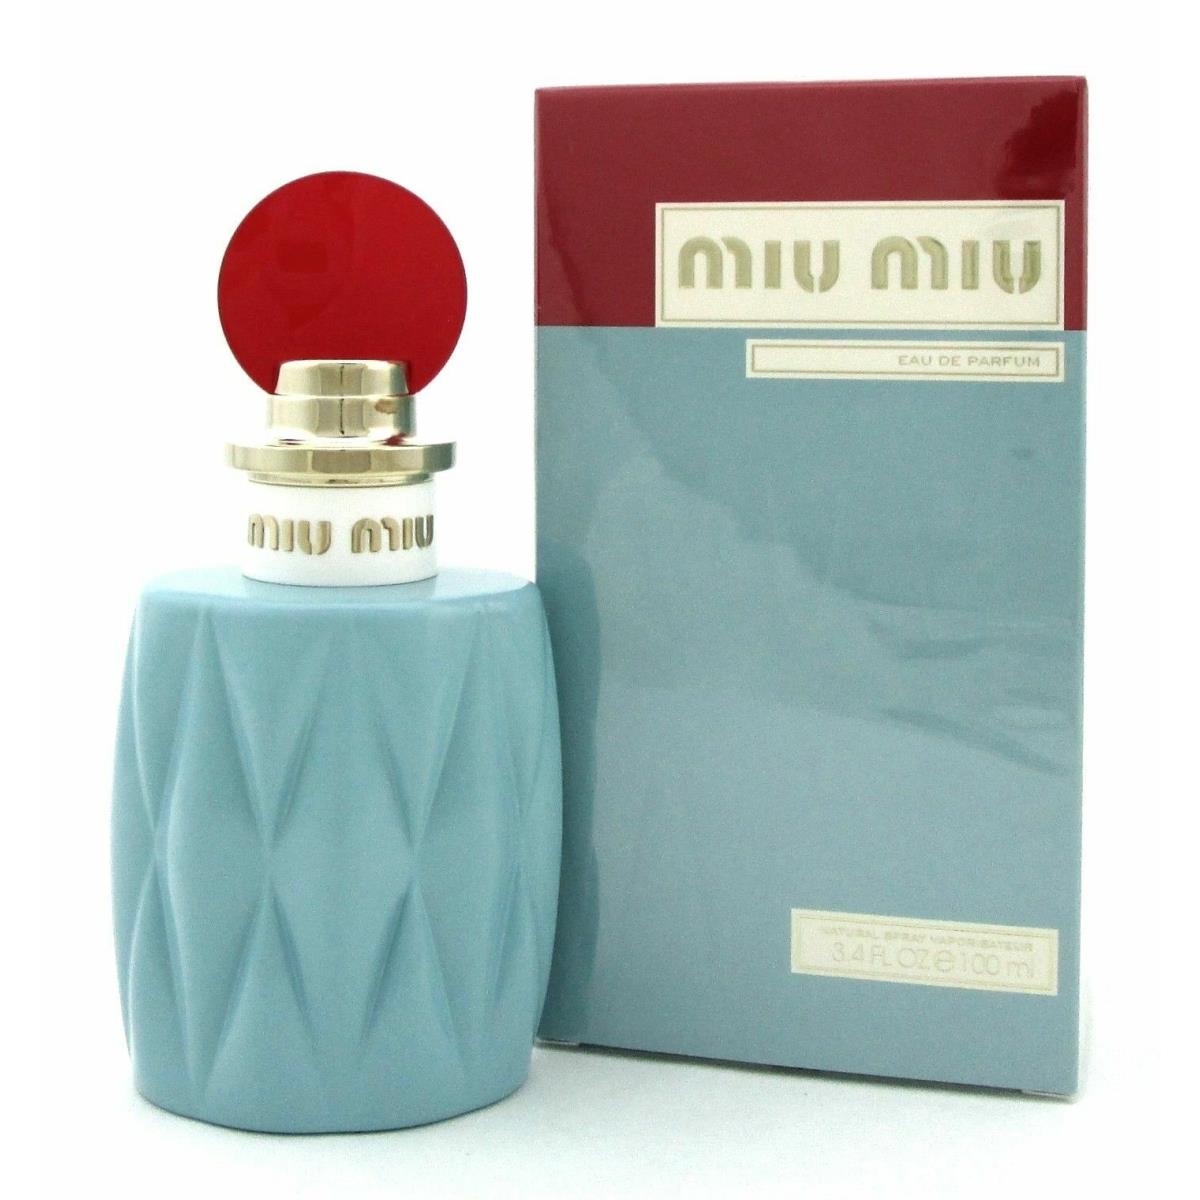 Perfume by Miu Miu 3.4 Oz. Eau de Parfum Spray For Women